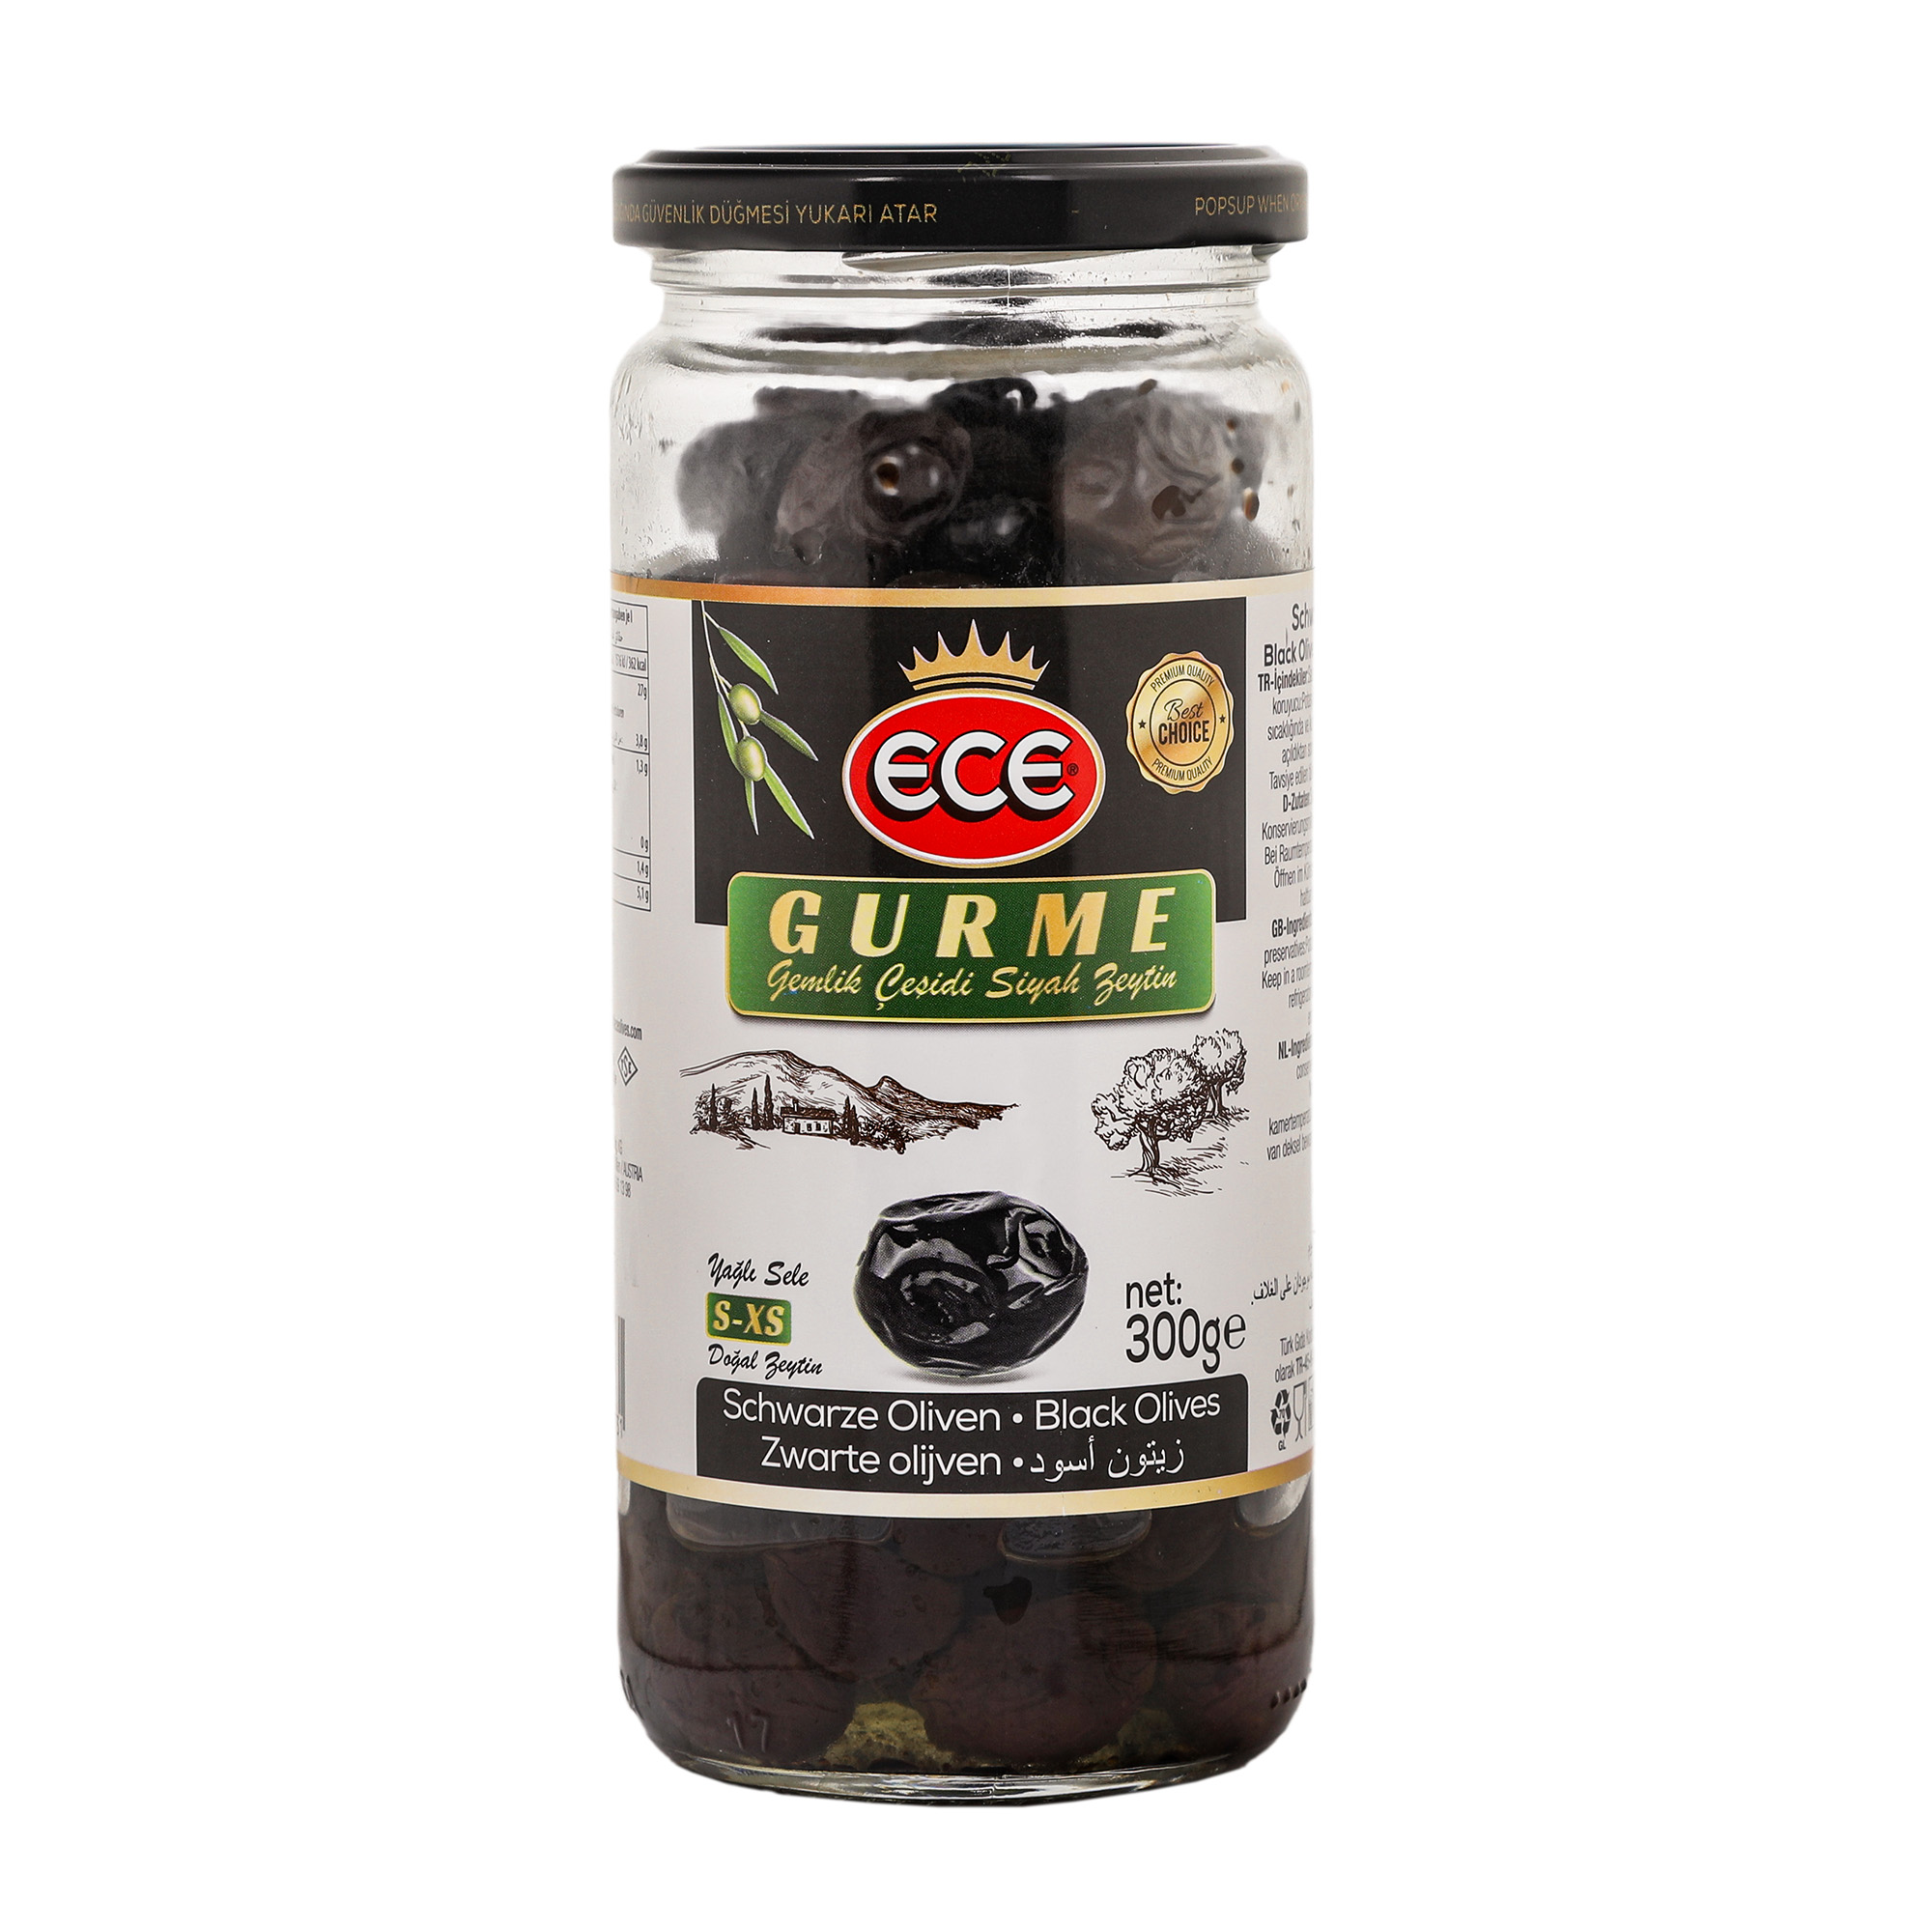 Оливки черные Ece Gurme в масле с косточкой, 300 г оливки iposea bella di cerignola 530 г